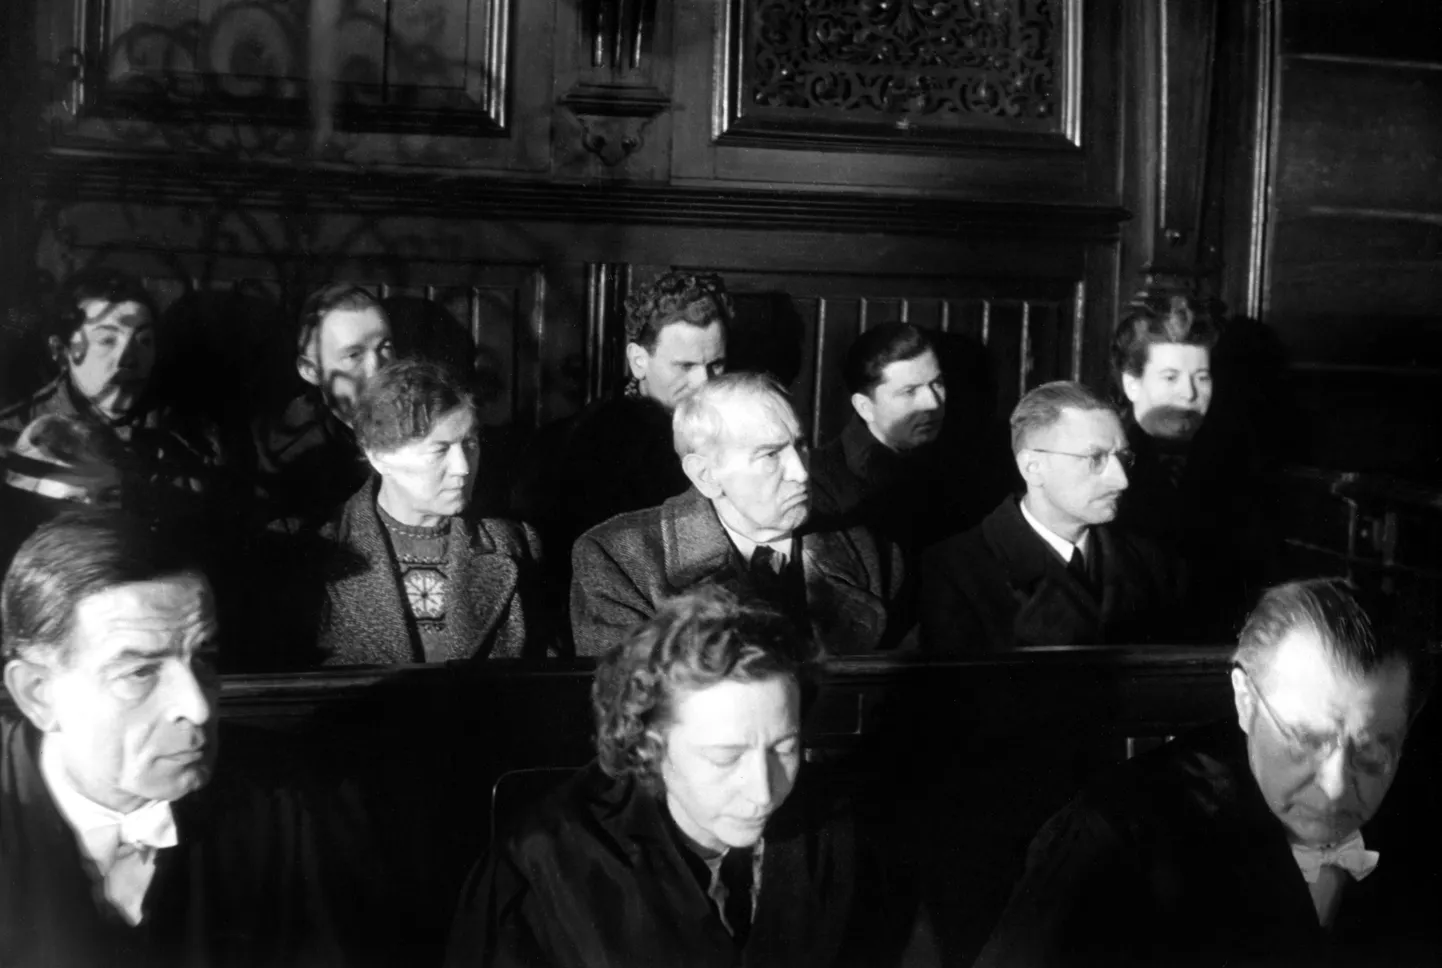 1947. aasta suurim sõjaaegse eutanaasia kohtuprotsess. Hadamari instituudi 26 arsti ja õde mõistetakse süüdi instituudi patsientide mõrvamises. Samas haiglas viidi II maailmasõja ajal gaasikambrisse üle 10 000 inimese.